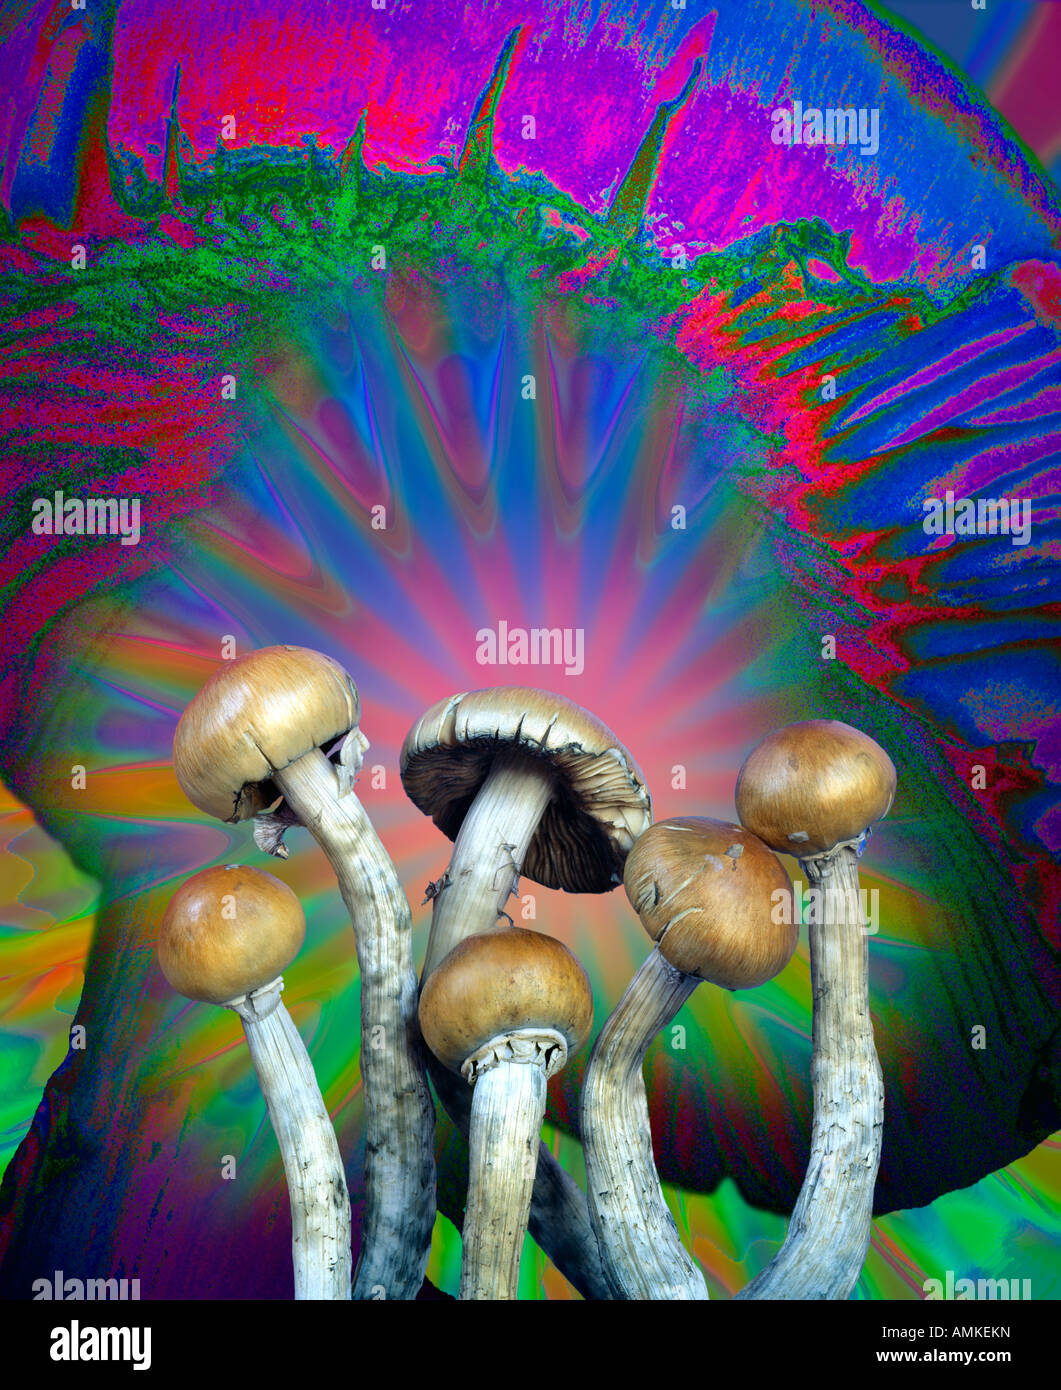 Une photographie de plusieurs champignons hallucinogènes contre une manipulation numérique version agrandie d'un chapeau de champignon Banque D'Images